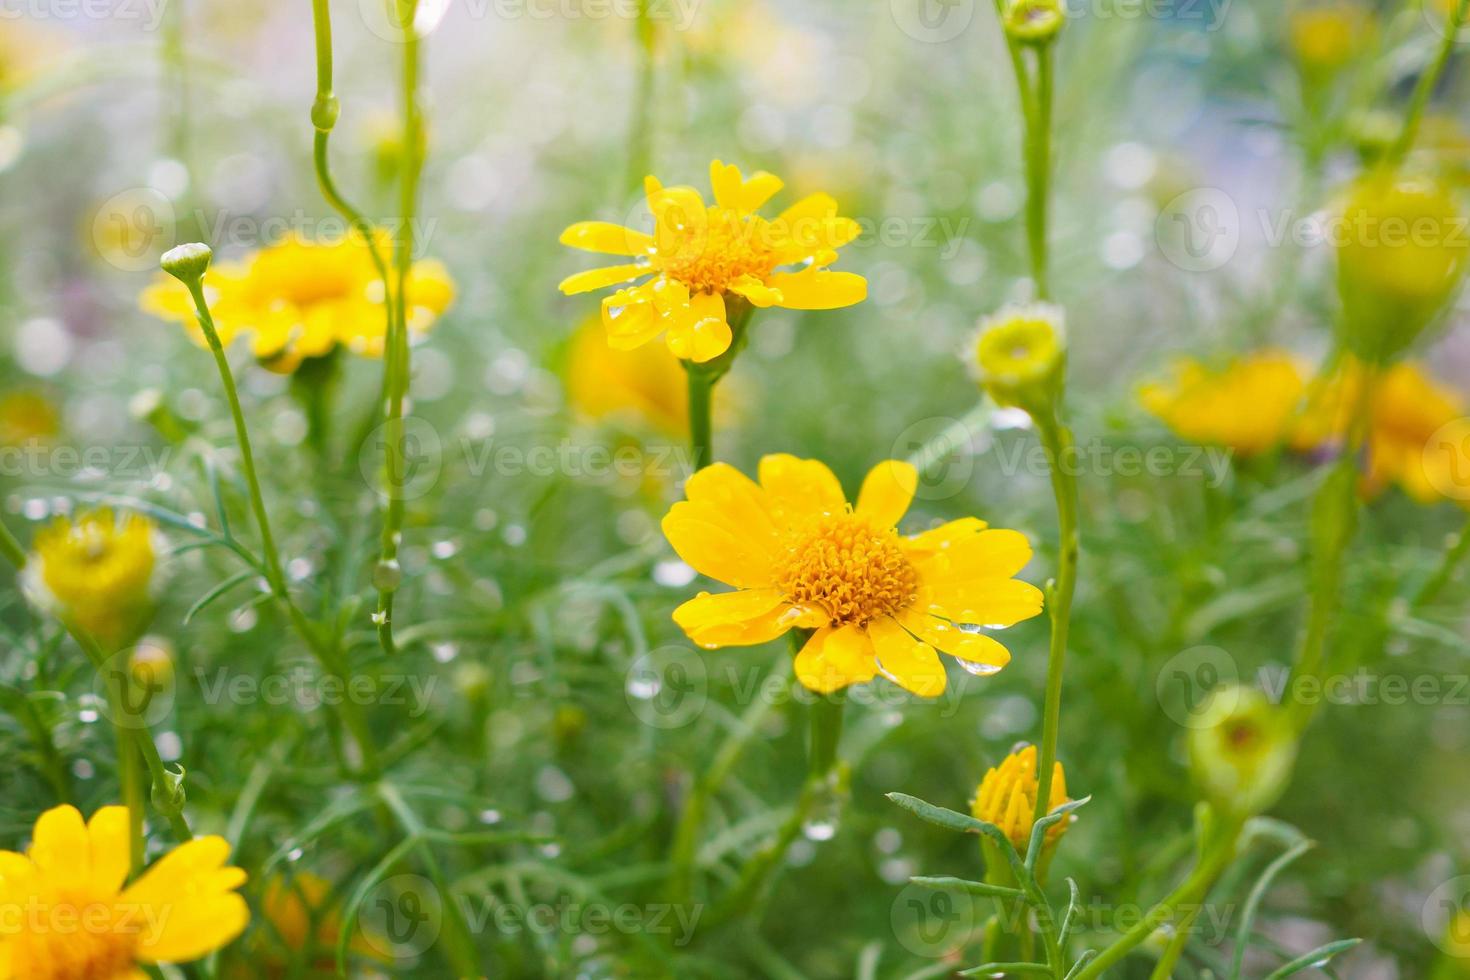 lindas flores de margarida no prado verde com gotas de água foto